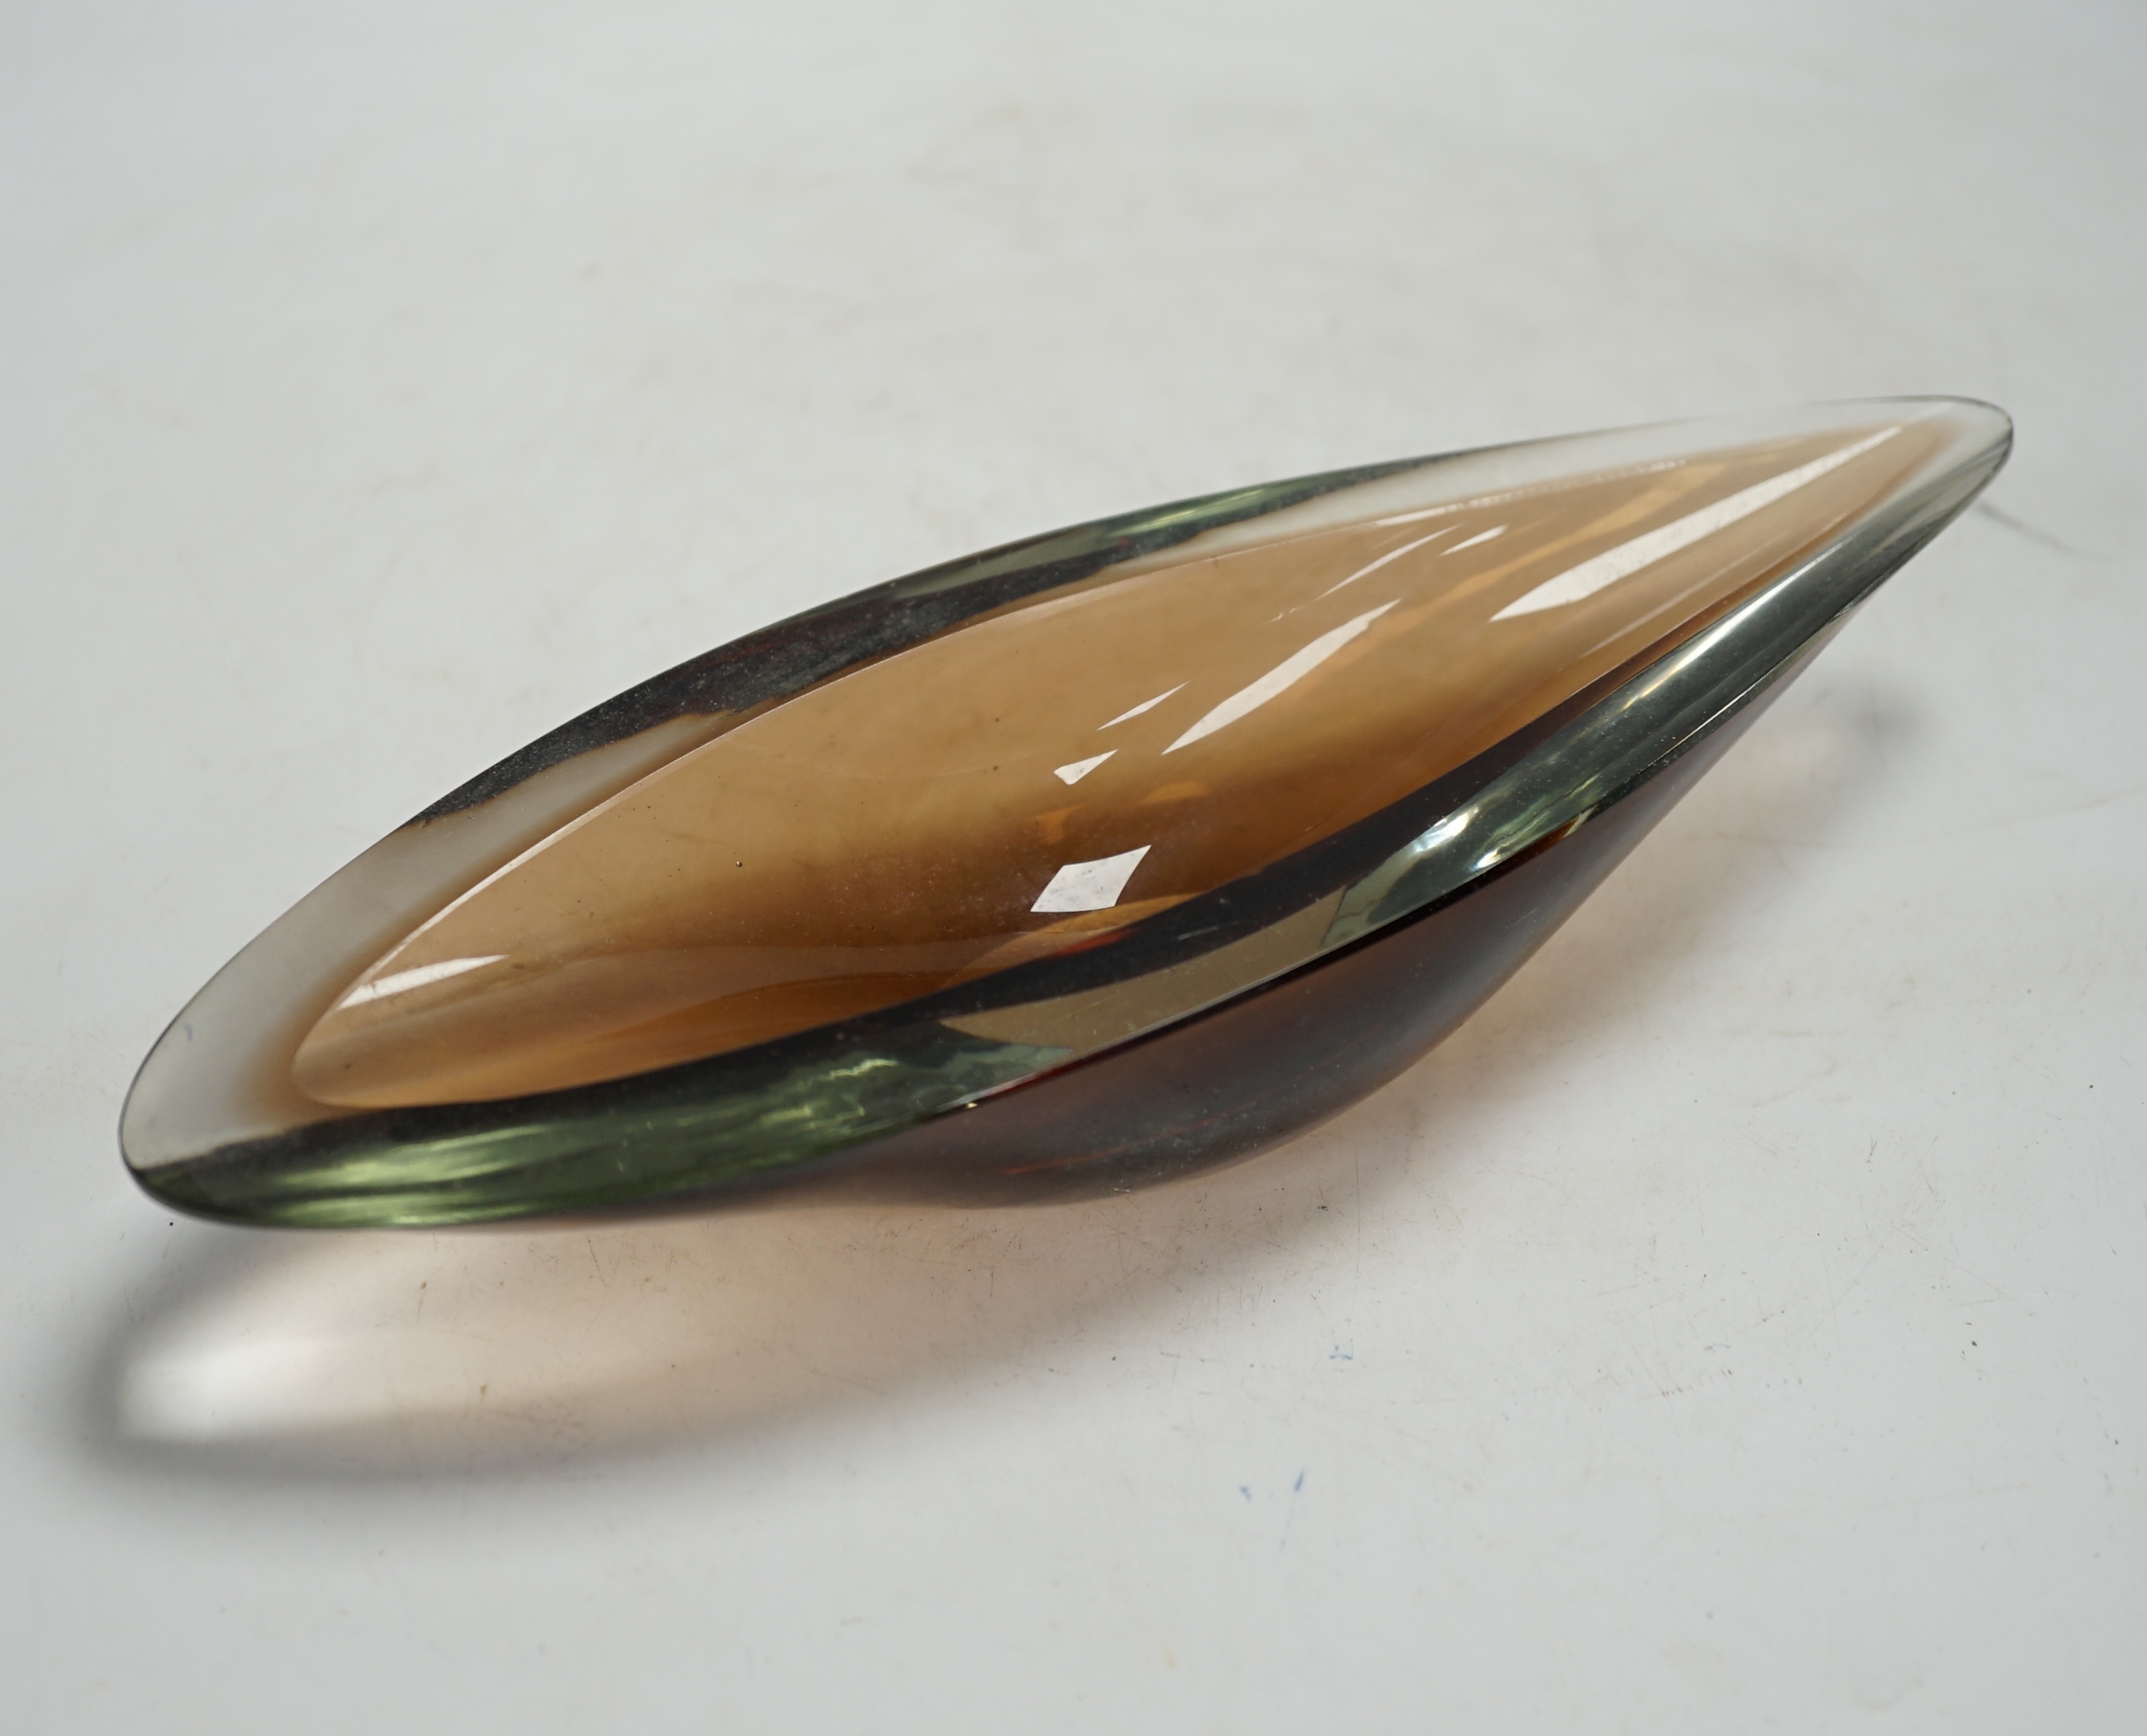 Kaj Franck for Nuutajarvi Notsjo, an art glass 'willow leaf' bowl, 26.5cm long. Condition - good